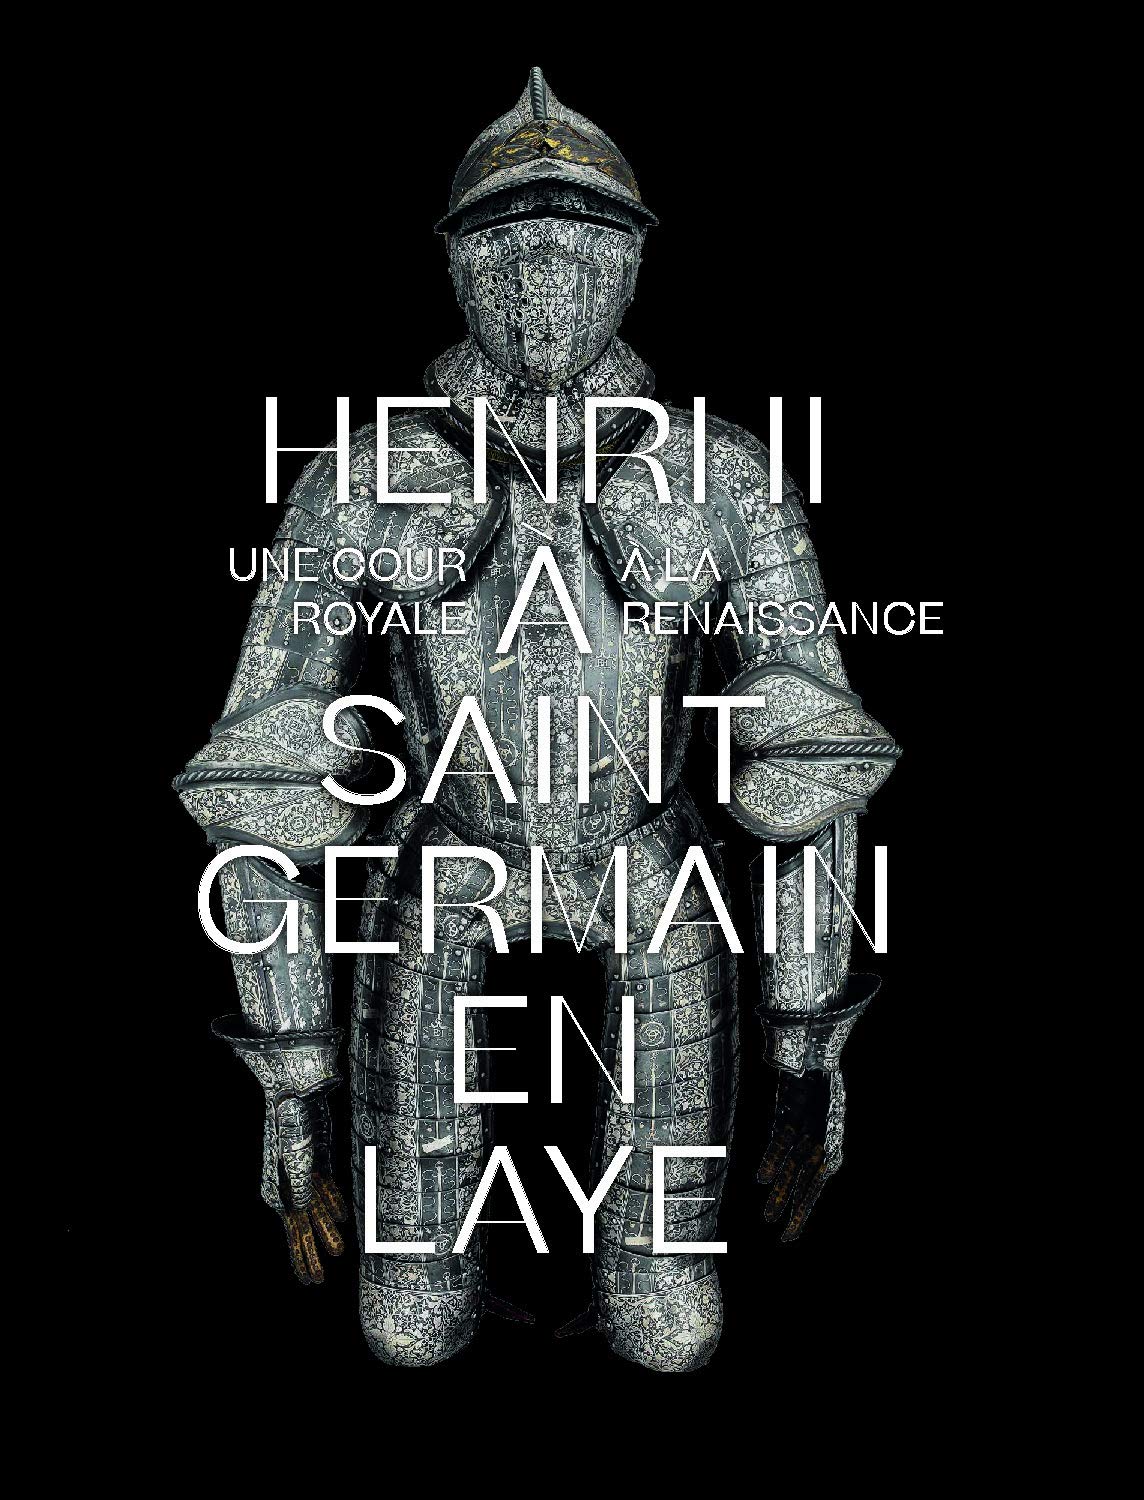 Henri II à Saint-Germain-en-Laye. Une cour royale à la Renaissance, (cat. expo. Musée d'Archéologie nationale, mars-juillet 2019), 2019, 168 p.